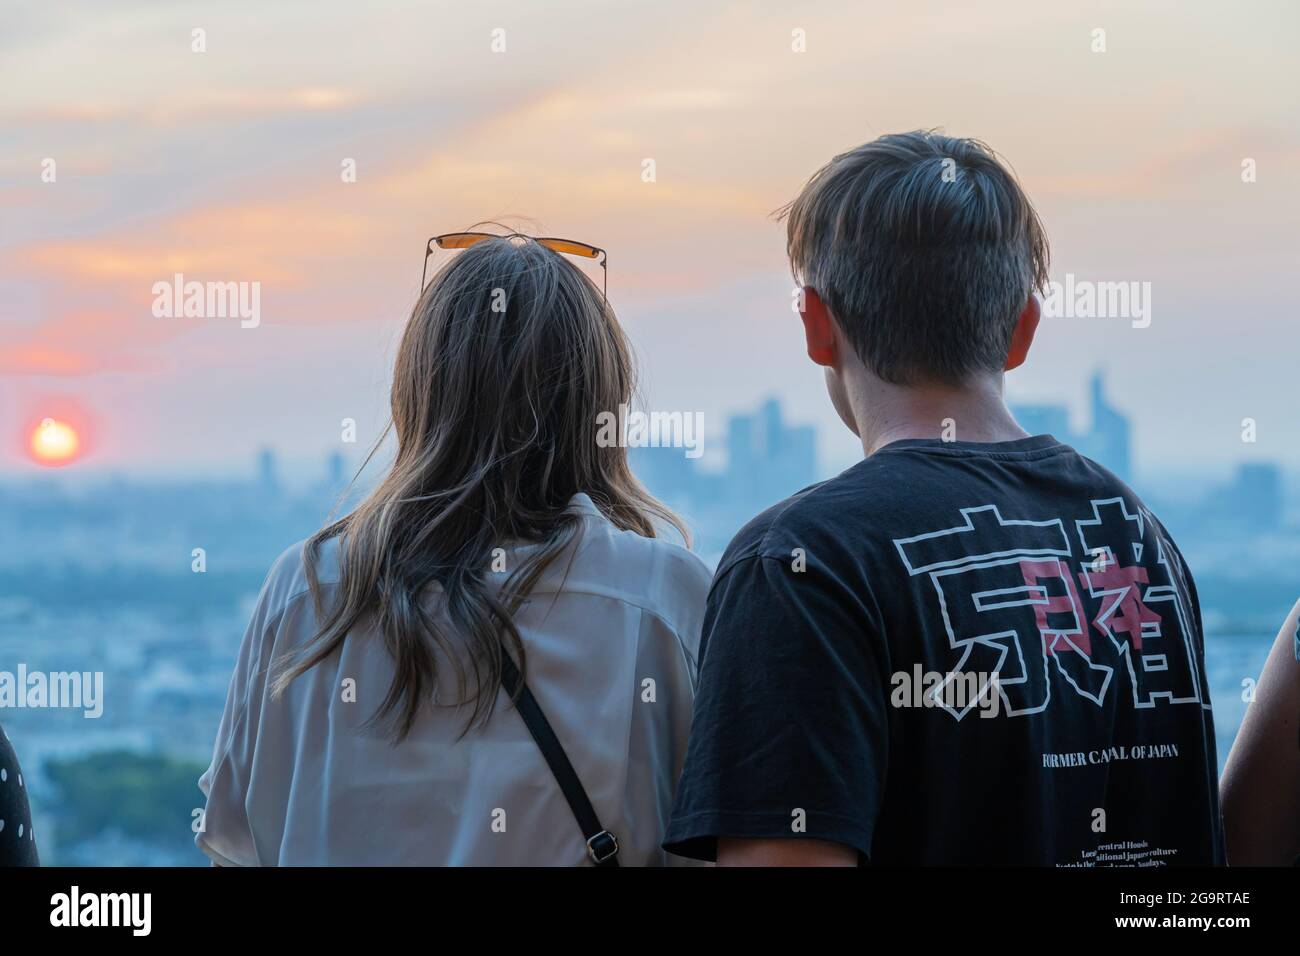 Paris, France - 07 22 2021: La Tour Eiffel: Une jeune fille et un garçon regardant la vue de Paris depuis la Tour Eiffel au coucher du soleil Banque D'Images